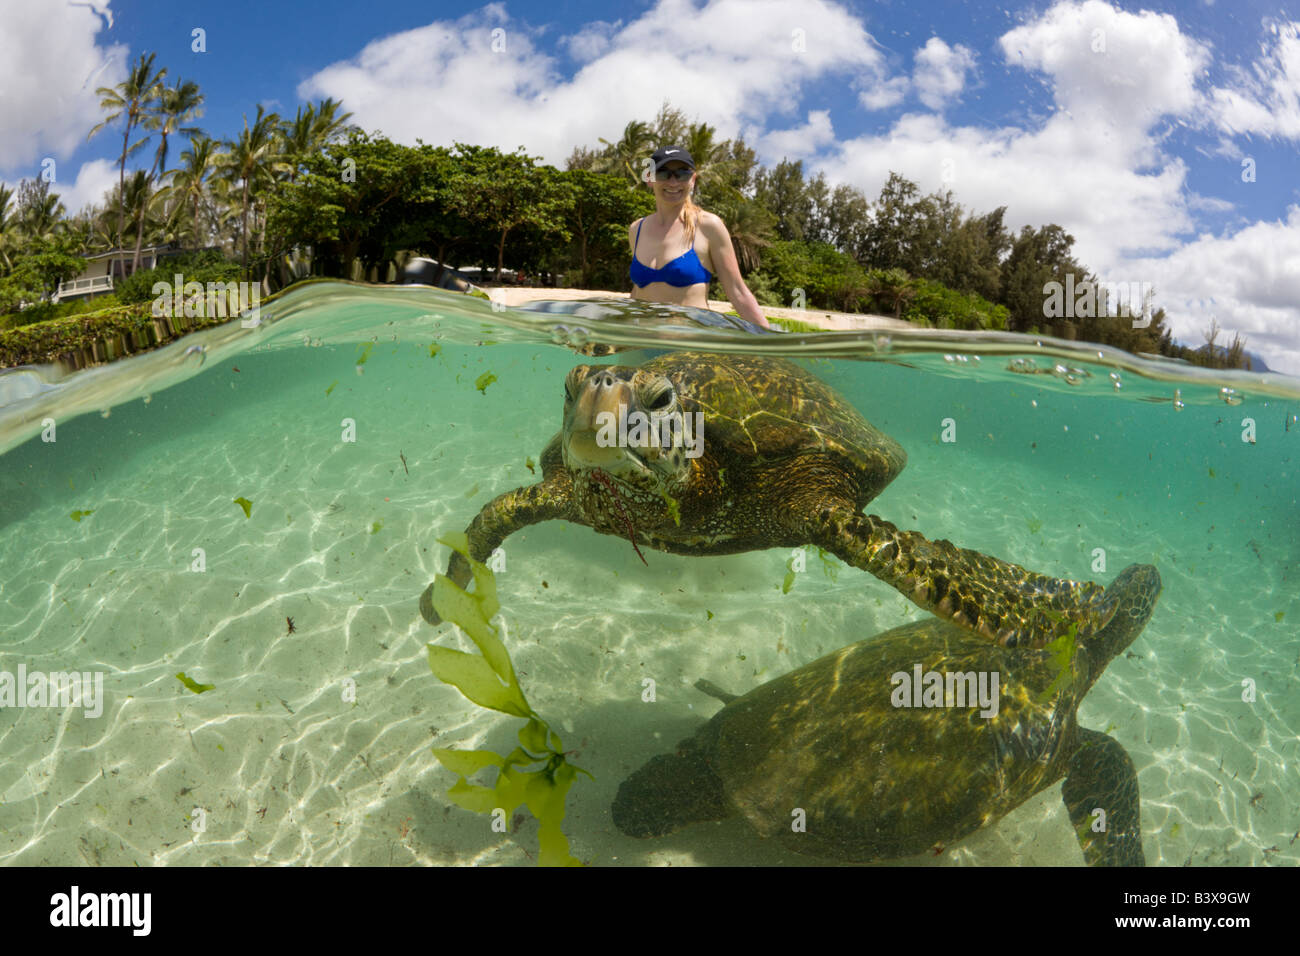 La Tortue verte Chelonia mydas et touristique de l'océan Pacifique Oahu Hawaii USA Banque D'Images